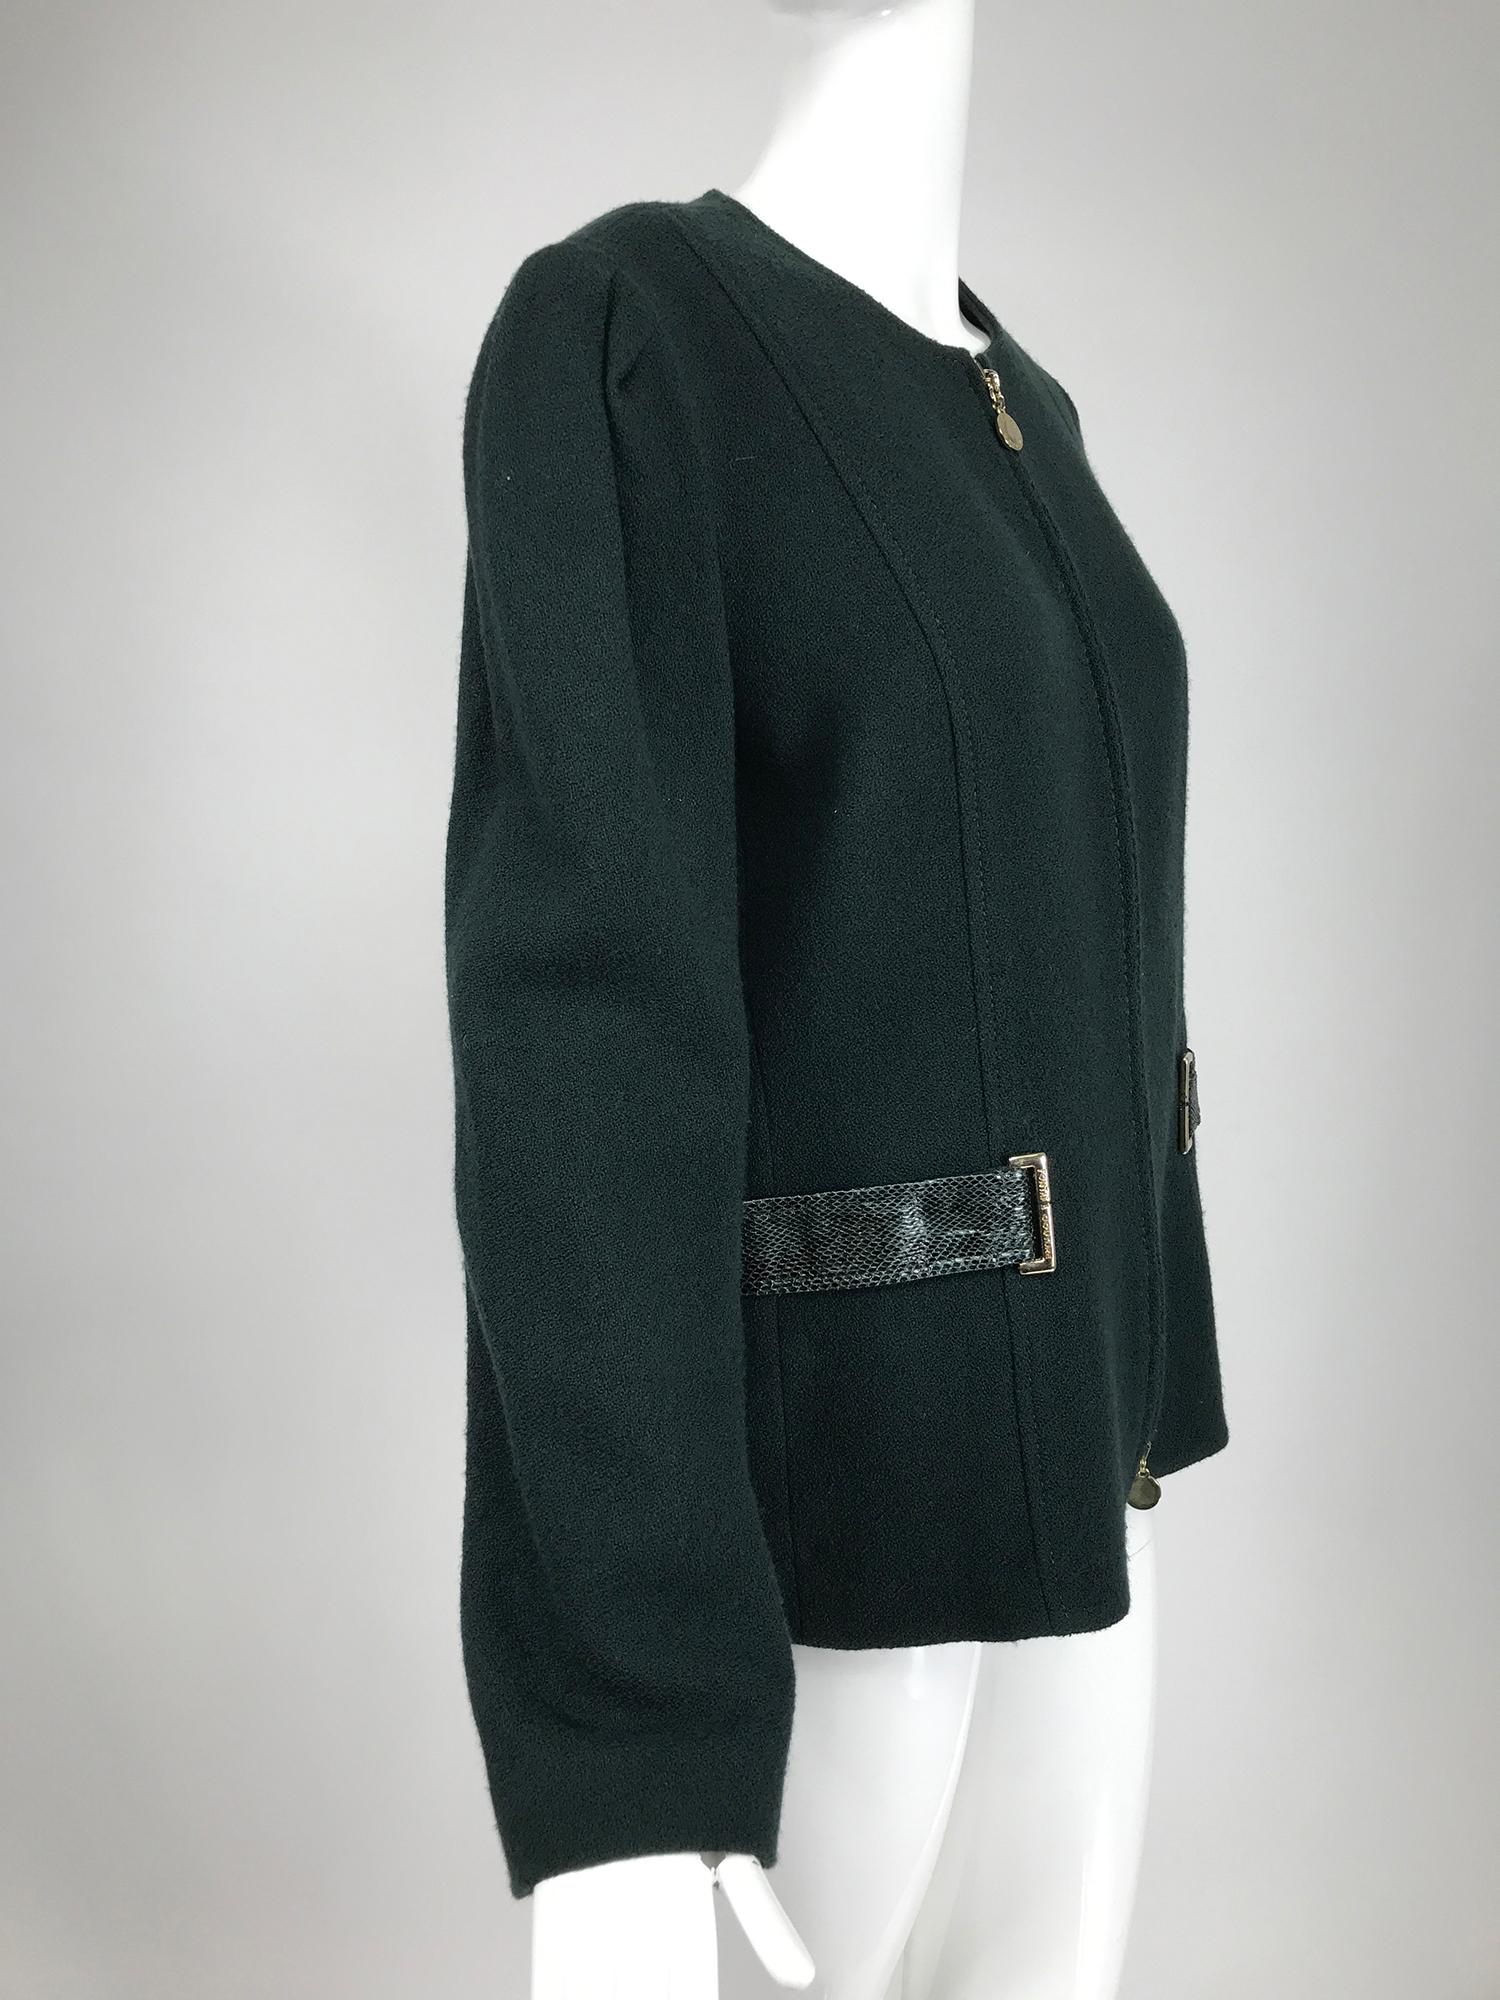 green zipper jacket